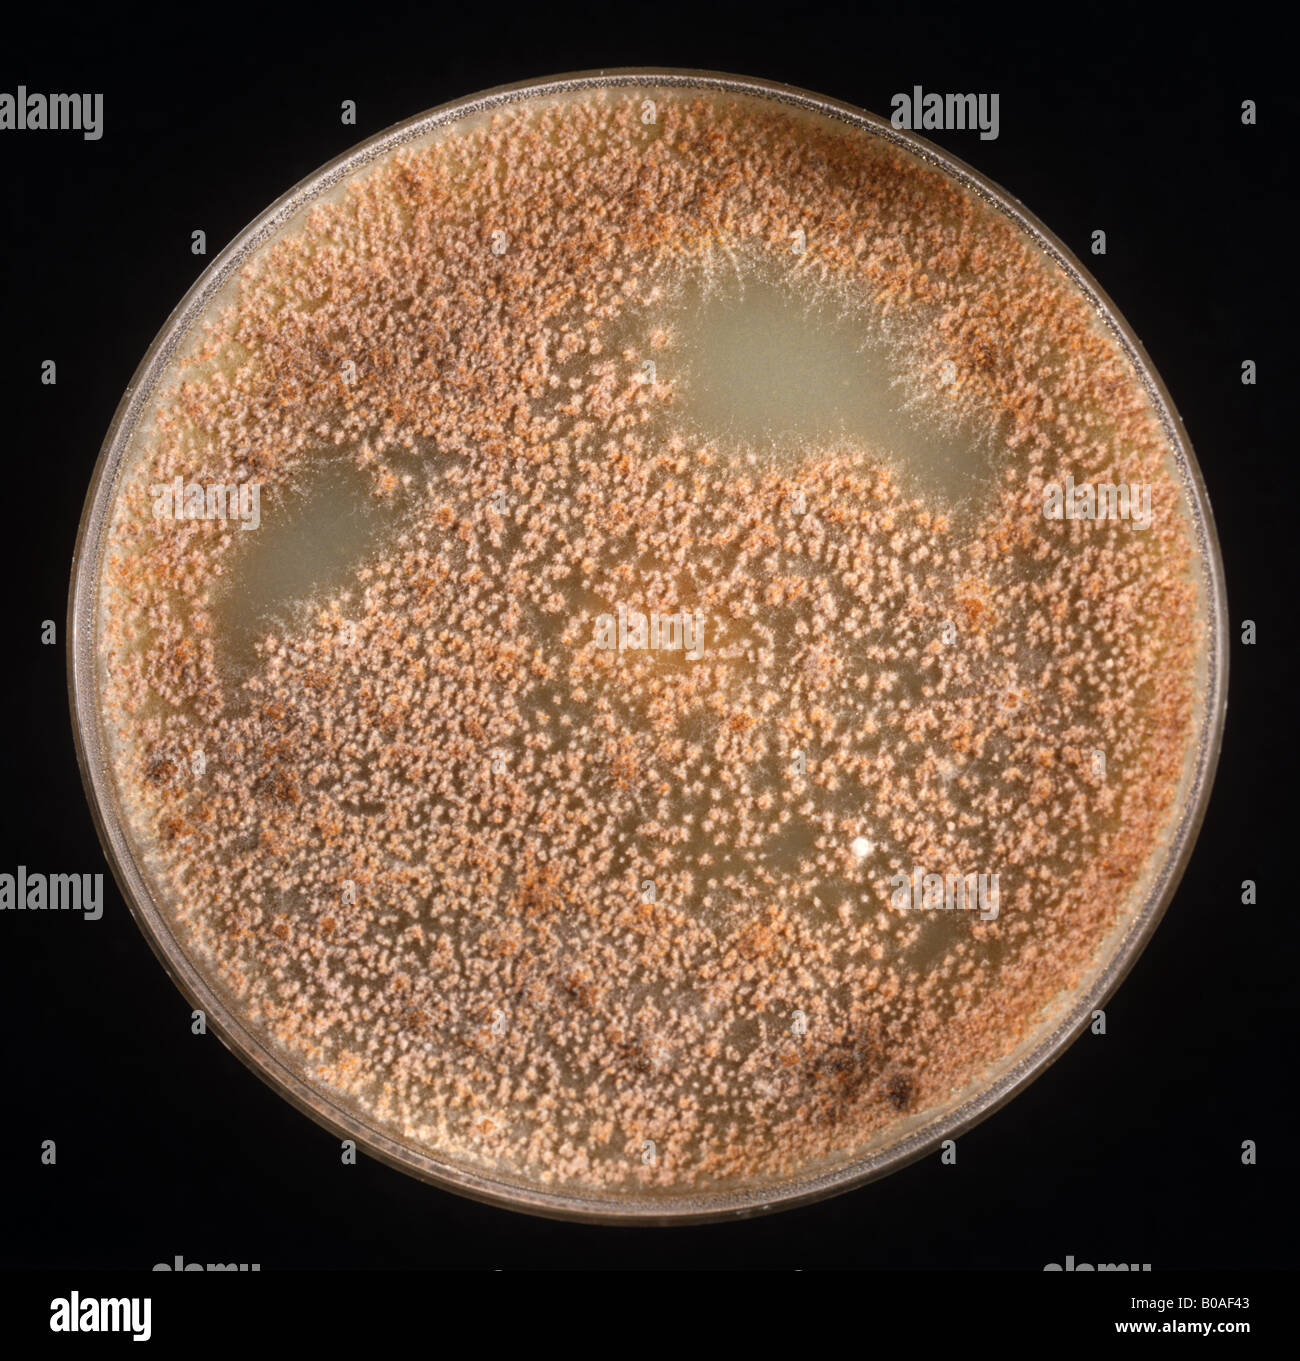 Cultura della macchia fogliare settoria (Phaeosphaeria nodorum) su piatto di Petri CzV8 Foto Stock